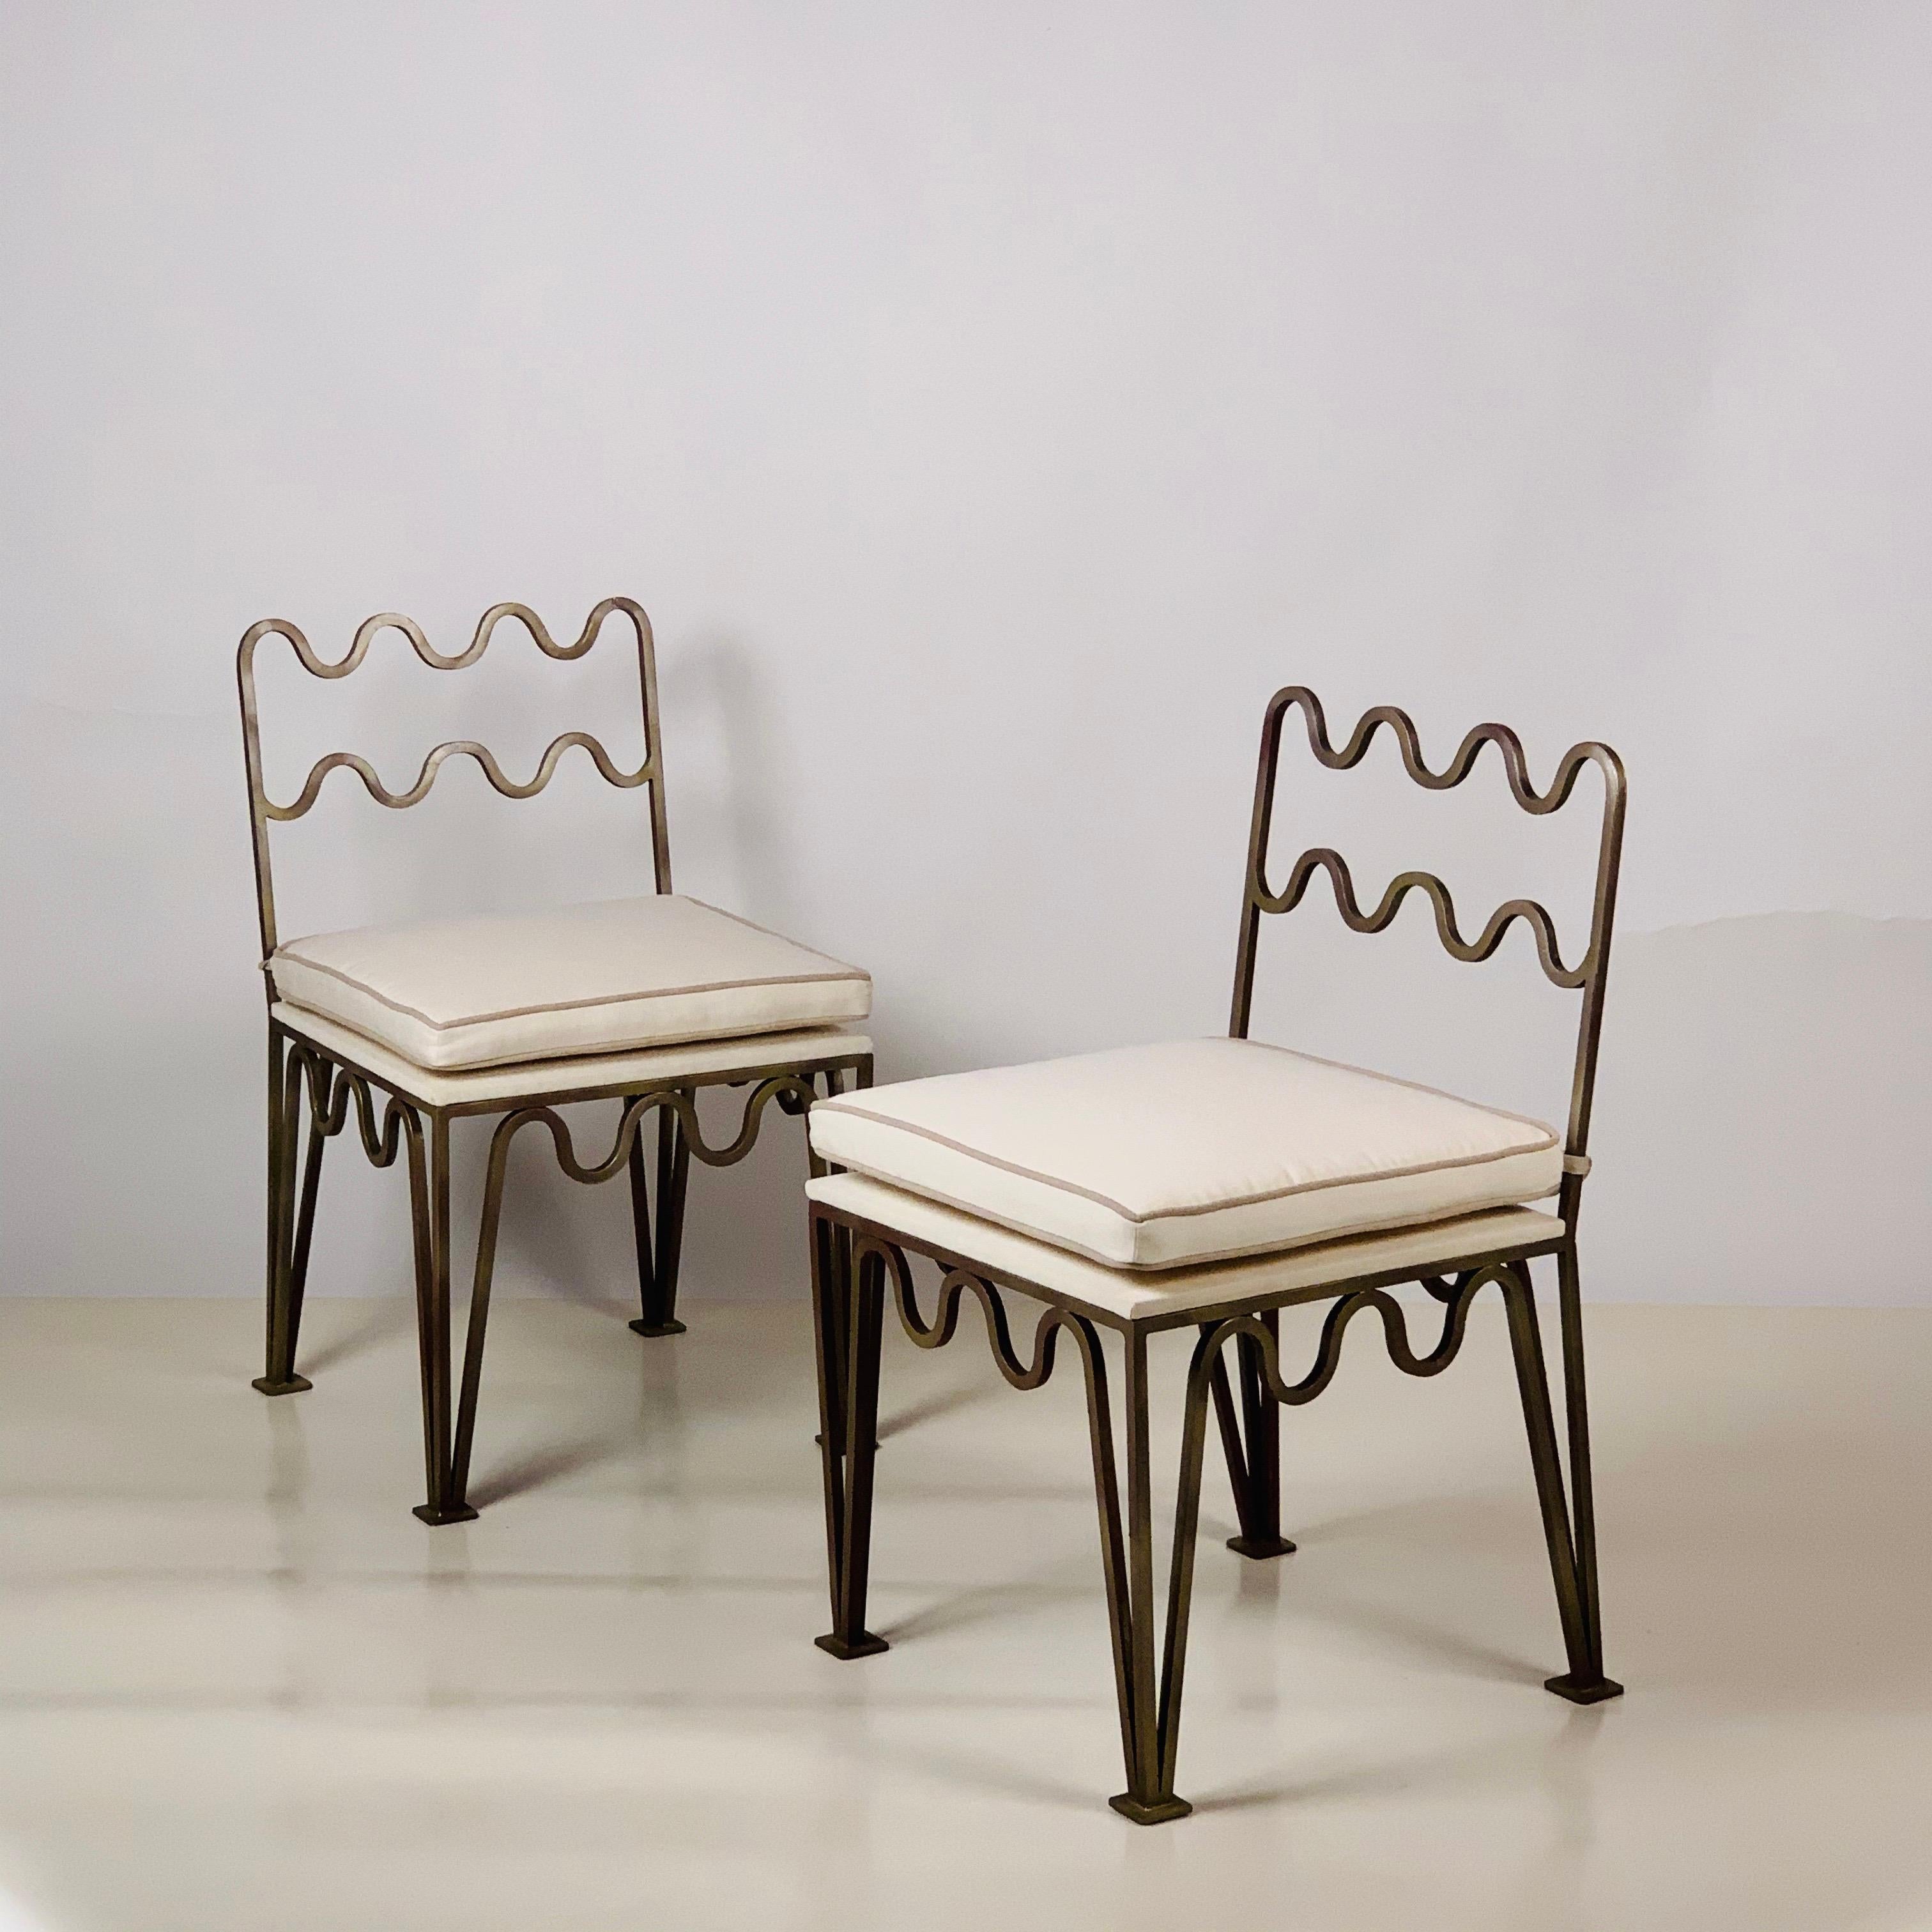 Paire de chaises d'appoint ondulées 'Méandre' de DESIGN FRÈRES®.

Patine de bronze sur armature en acier. Coussins rembourrés en lin naturel avec passepoil contrasté.

Chic et discret.